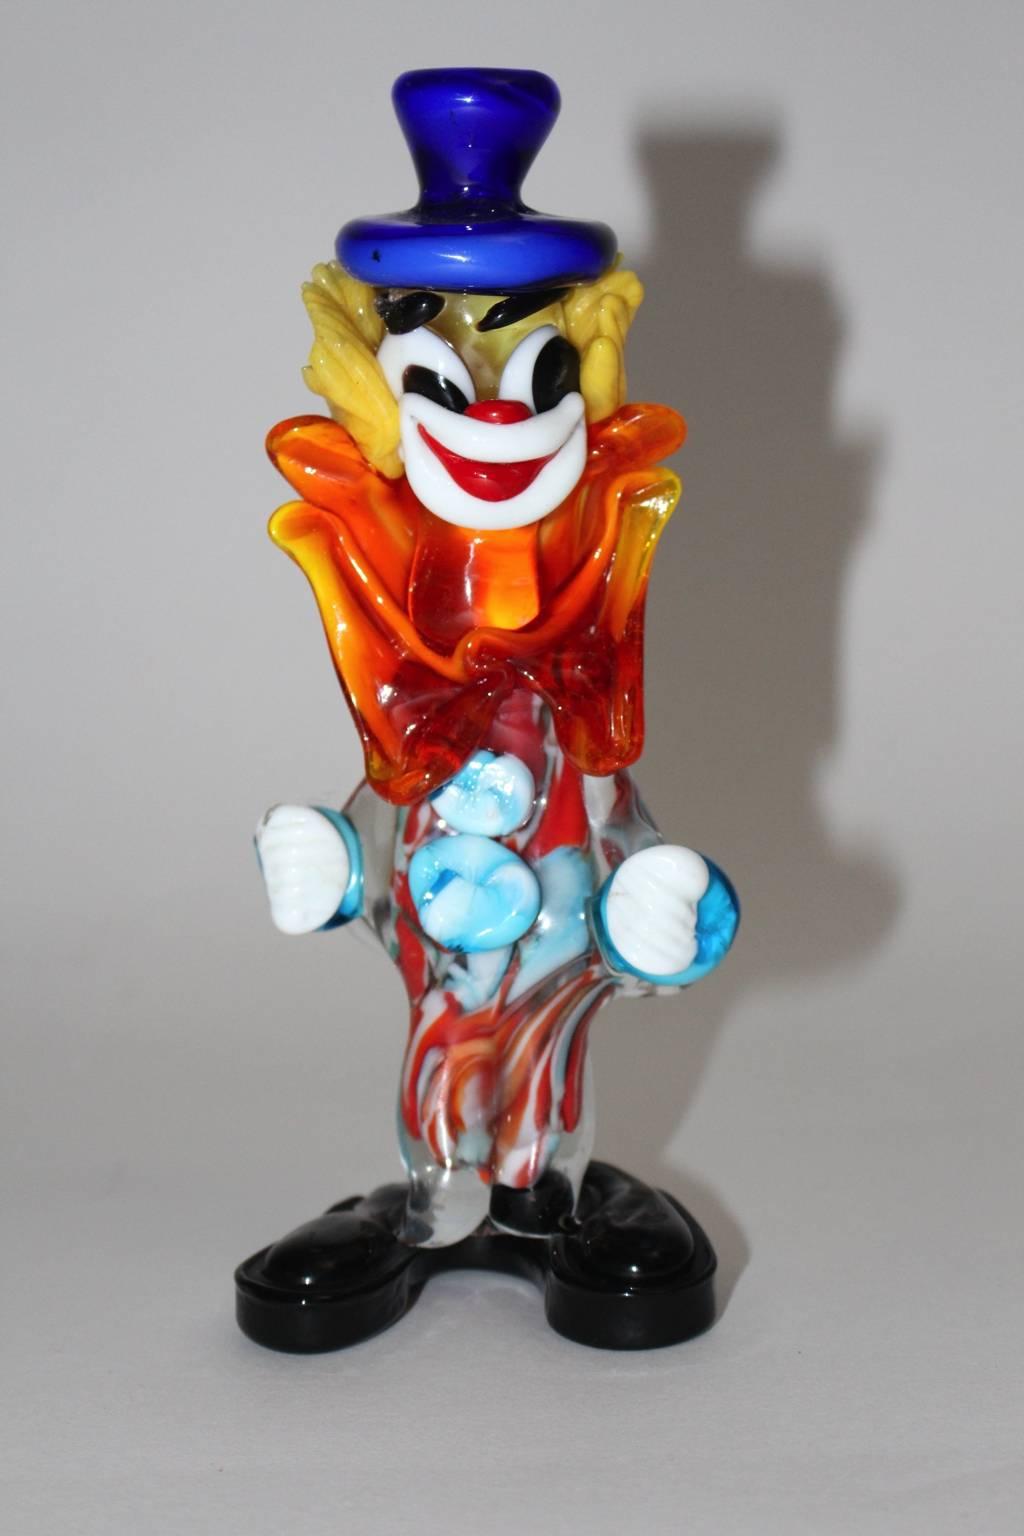 Murano-Glas-Clown in den Farben blau, rot, gelb, weiß und orange. 
Erstaunliche Glasclown-Skulptur, entworfen und hergestellt in der Mitte des Jahrhunderts in Murano, Italien.
Sehr guter Zustand
ca. Maße:
Breite 8 cm
Tiefe 7 cm
Höhe 20 cm

.
    